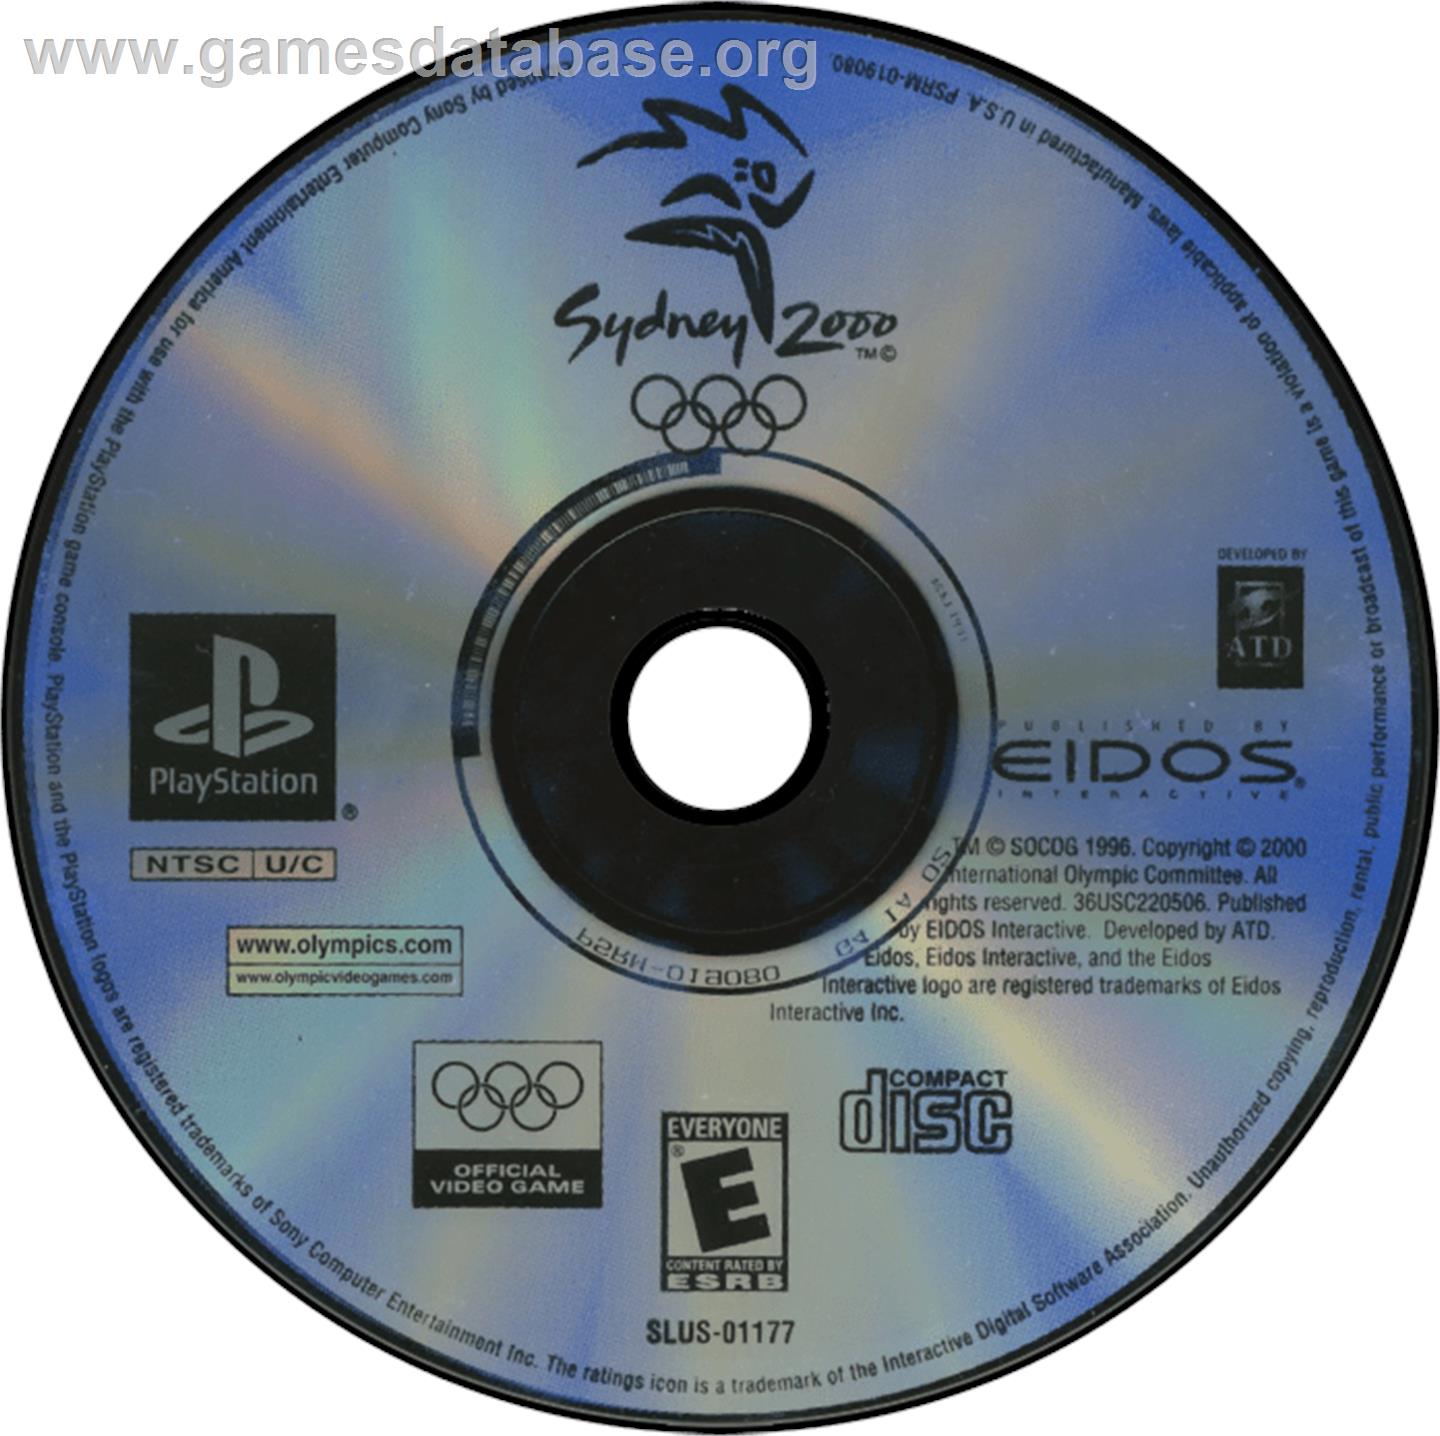 Sydney 2000 - Sony Playstation - Artwork - Disc